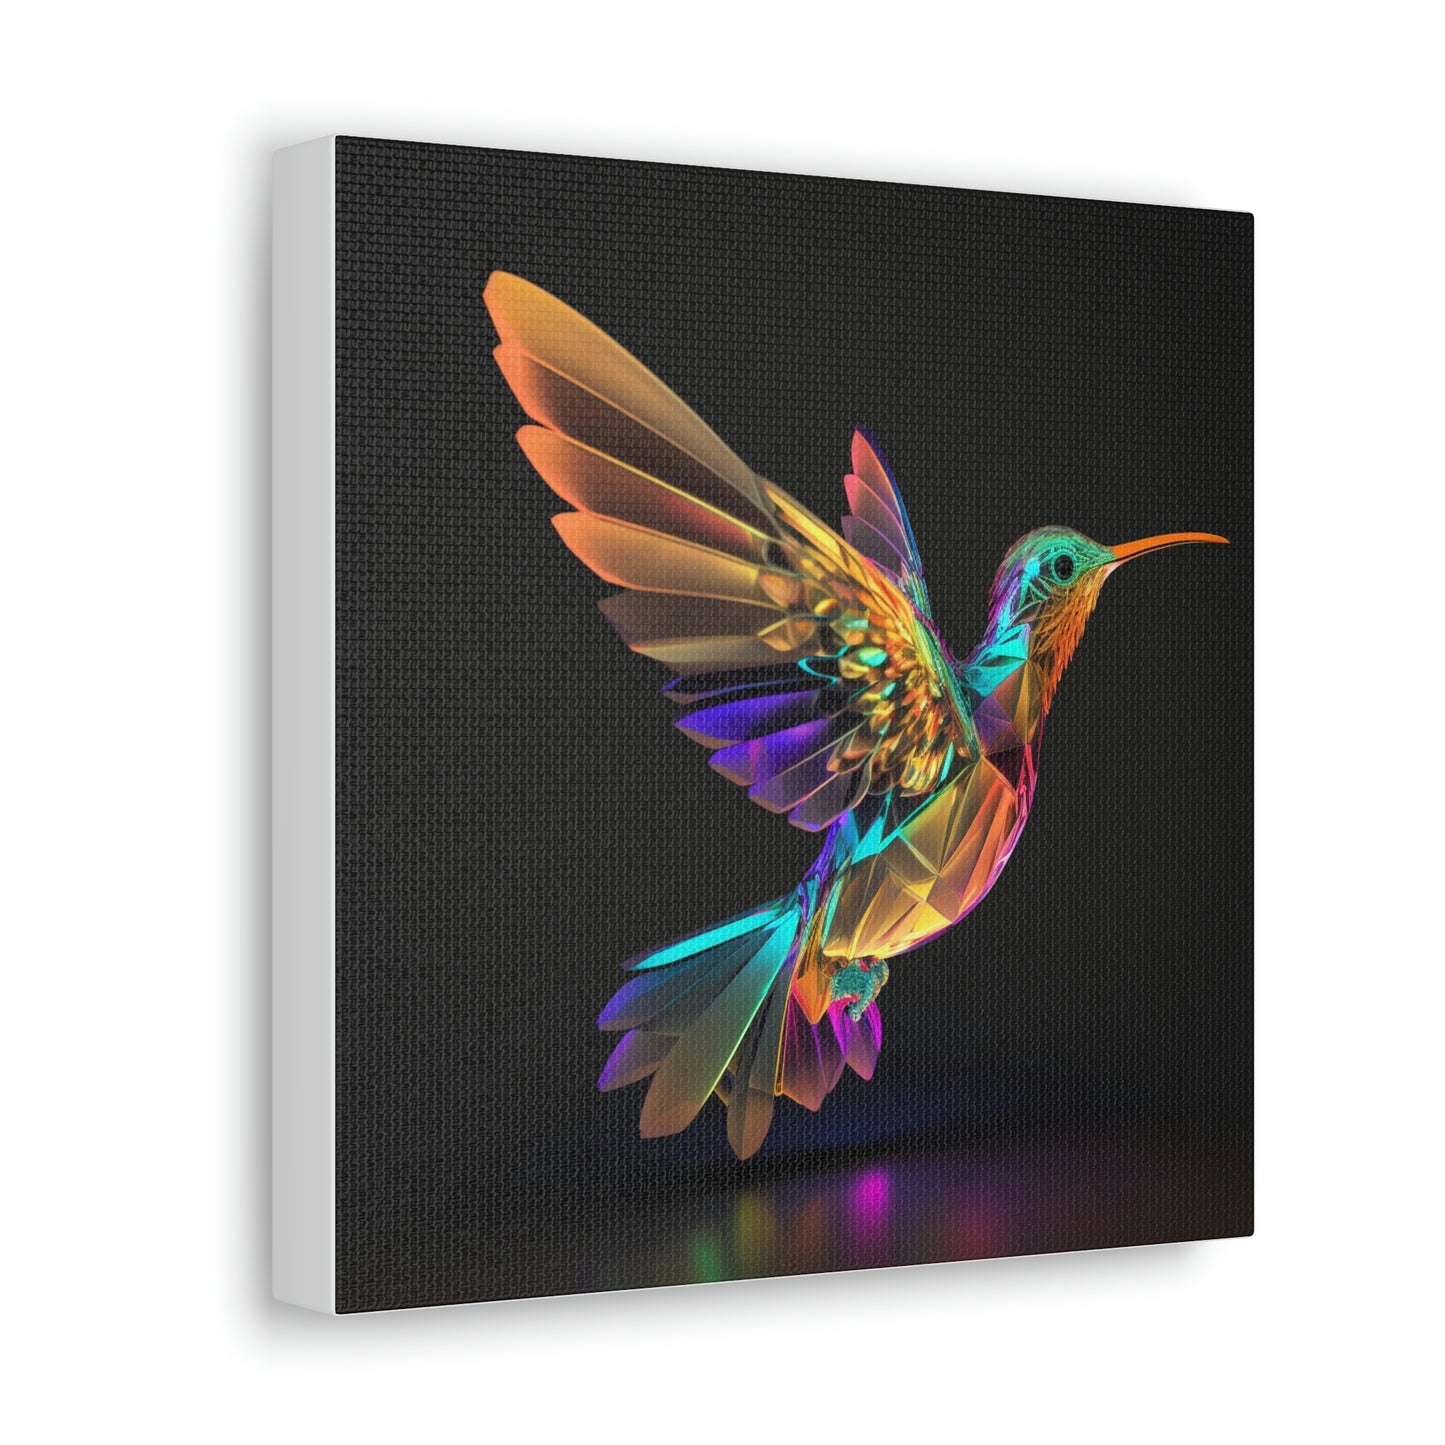 Hummingbird glass florescent glow